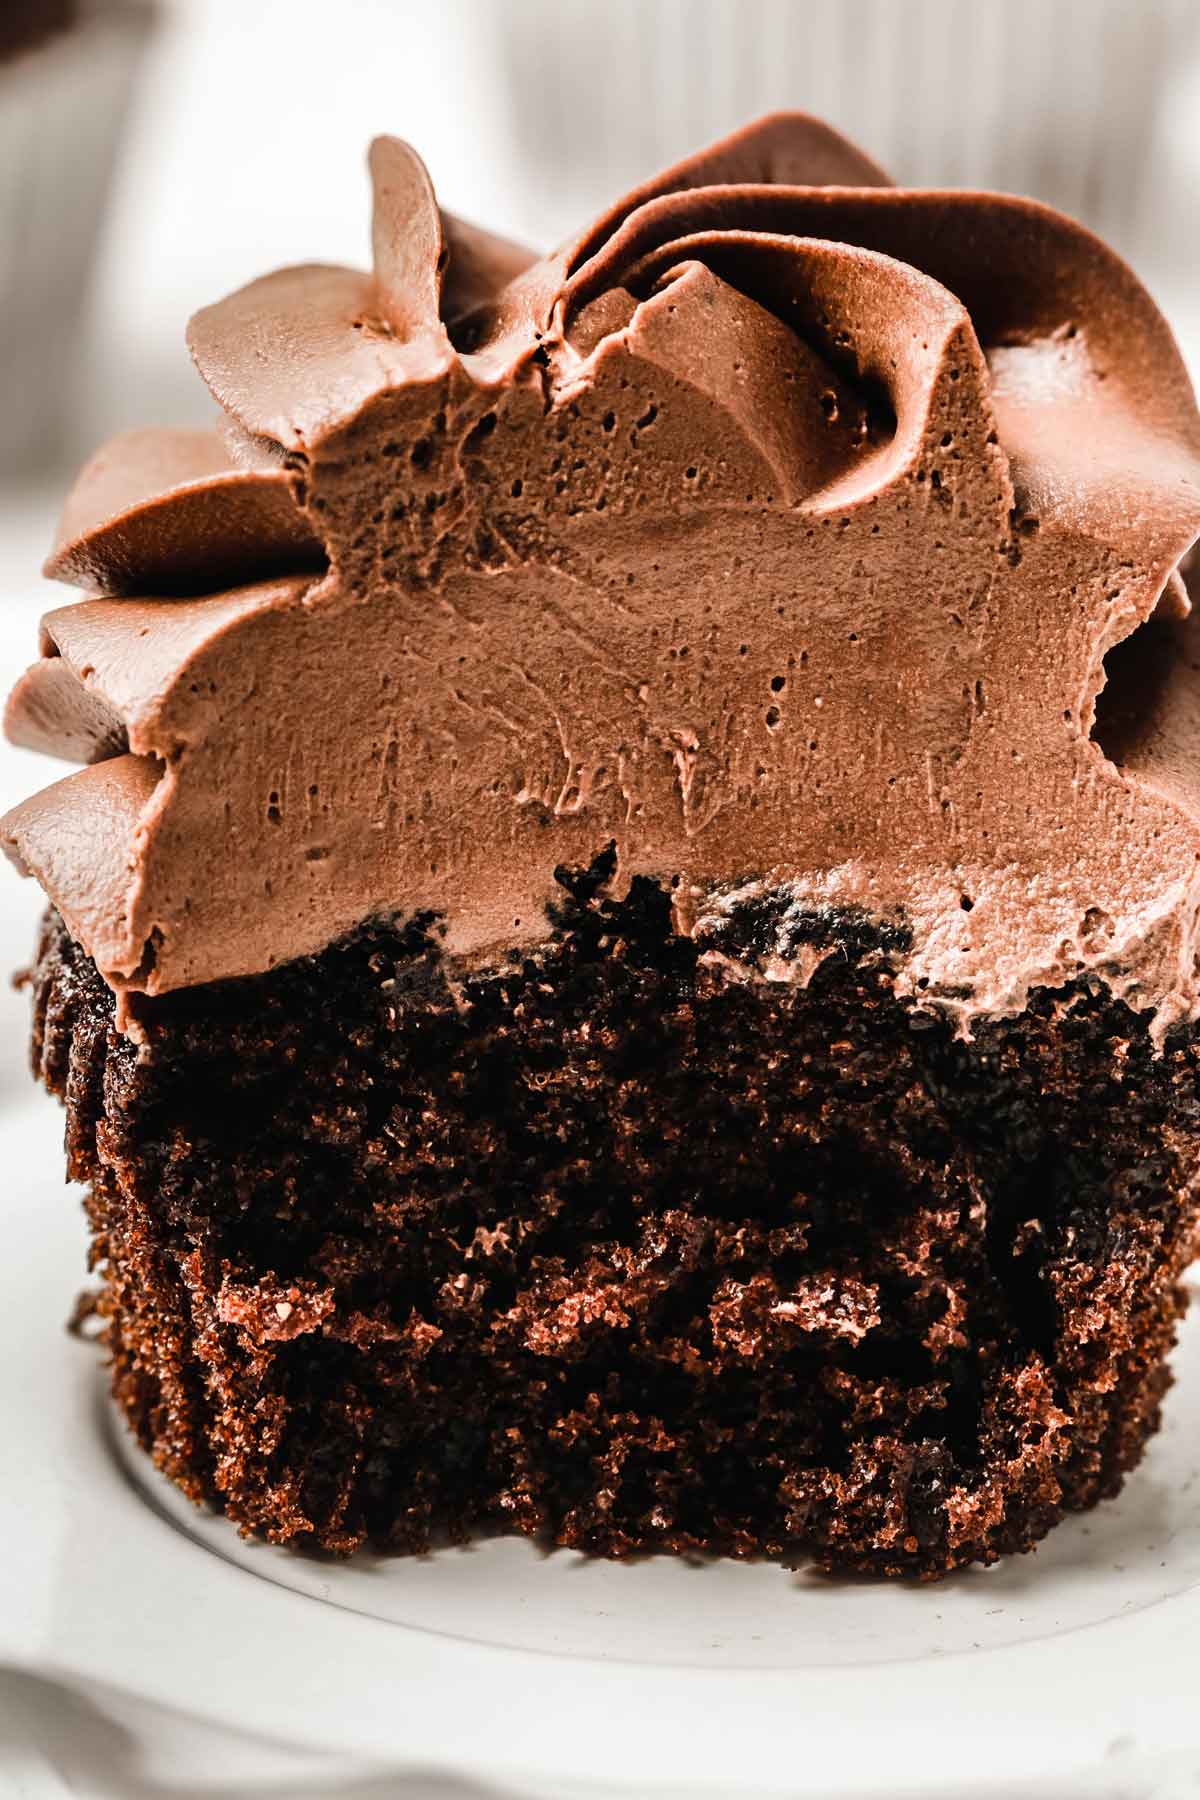 Chocolate cupcake cut in half